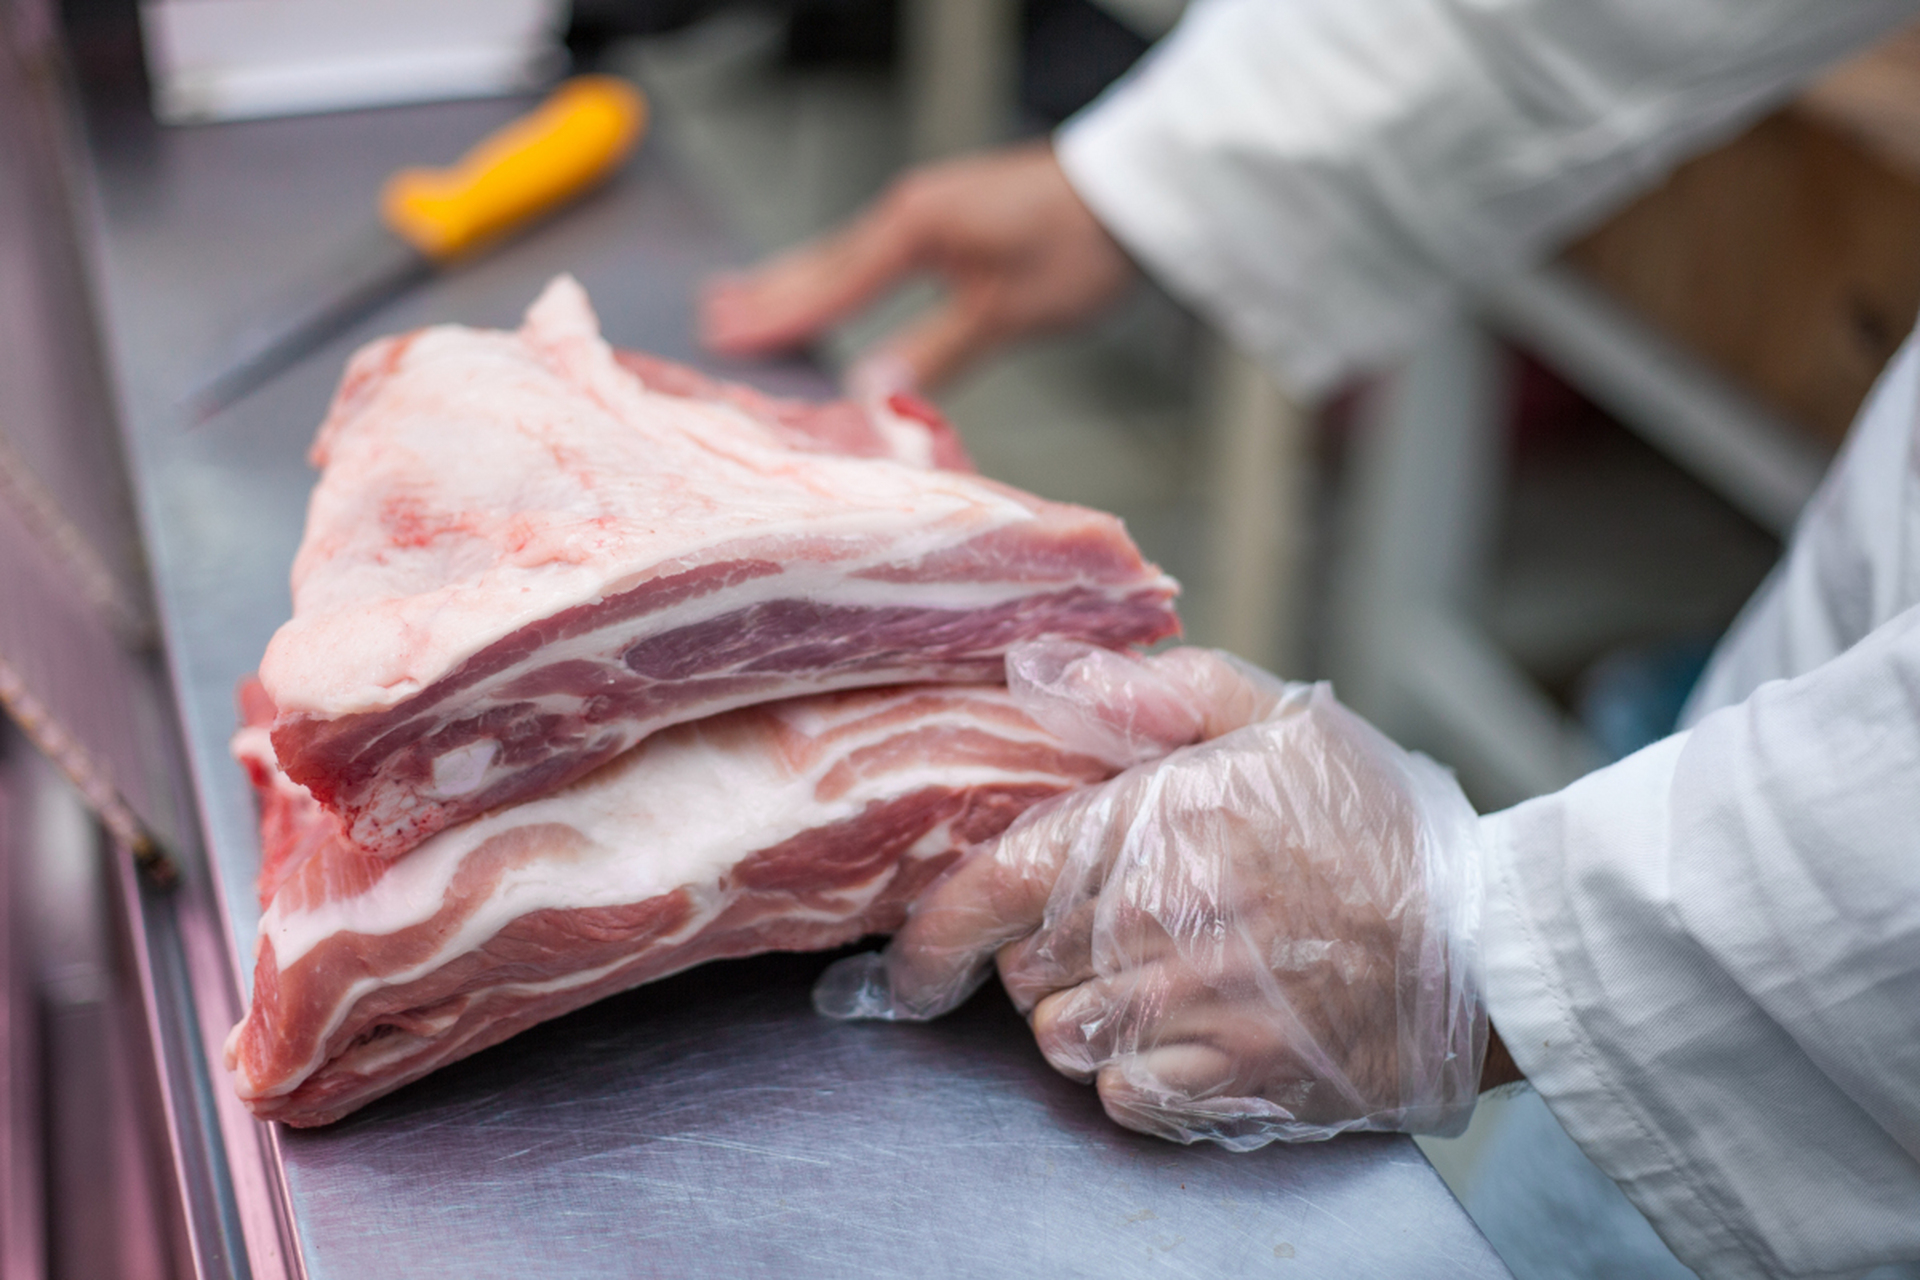 市面上出现的硼砂猪肉,吃了会怎样?如何区分?建议早了解